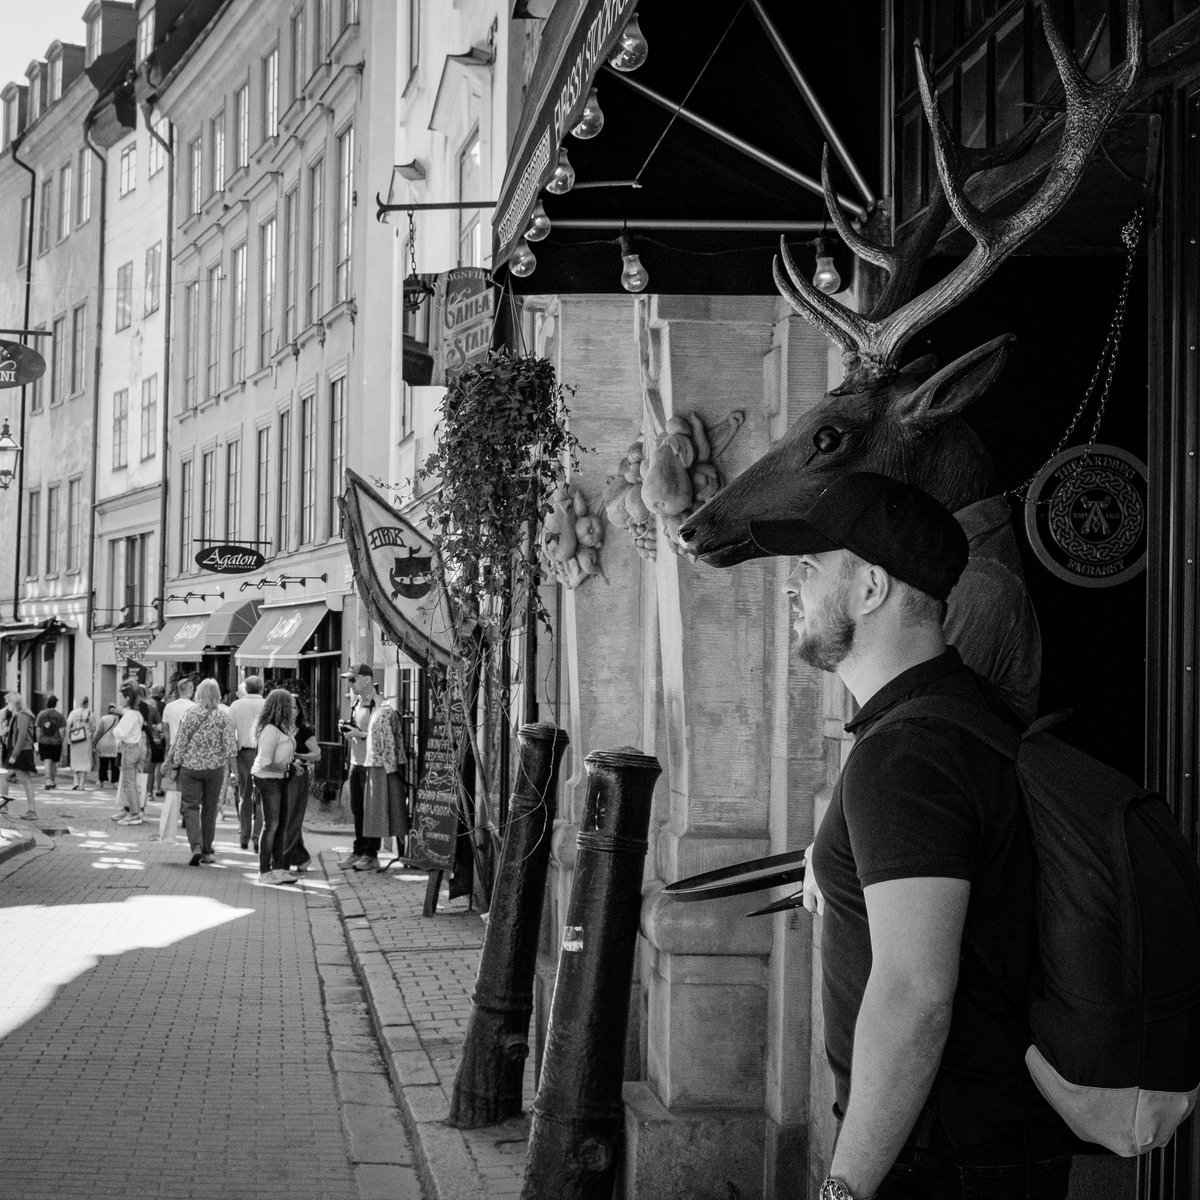 -
-
-
.
#stockholm #bw #bnw #streetphoto_bnw #streetphotobw #bwstreet #streetportrait #bwstreetphotography #street #streets #streetphotographer #streetphotography #street_photography